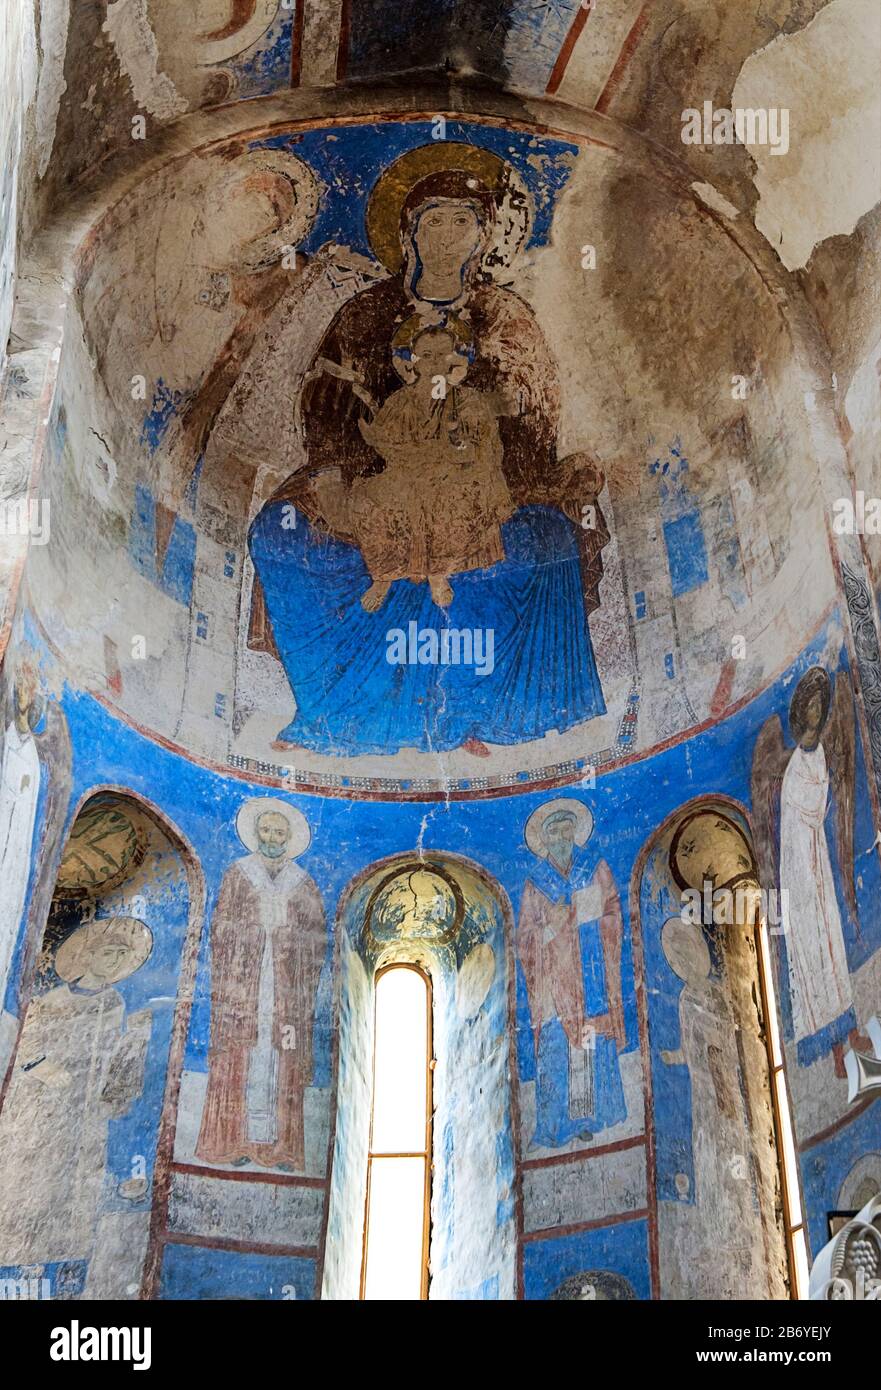 Intérieur de l'église Saint-Nicolas dans la monaterie orthodoxe géorgienne Kintsvisi, région de Shida Kartli, Géorgie Banque D'Images